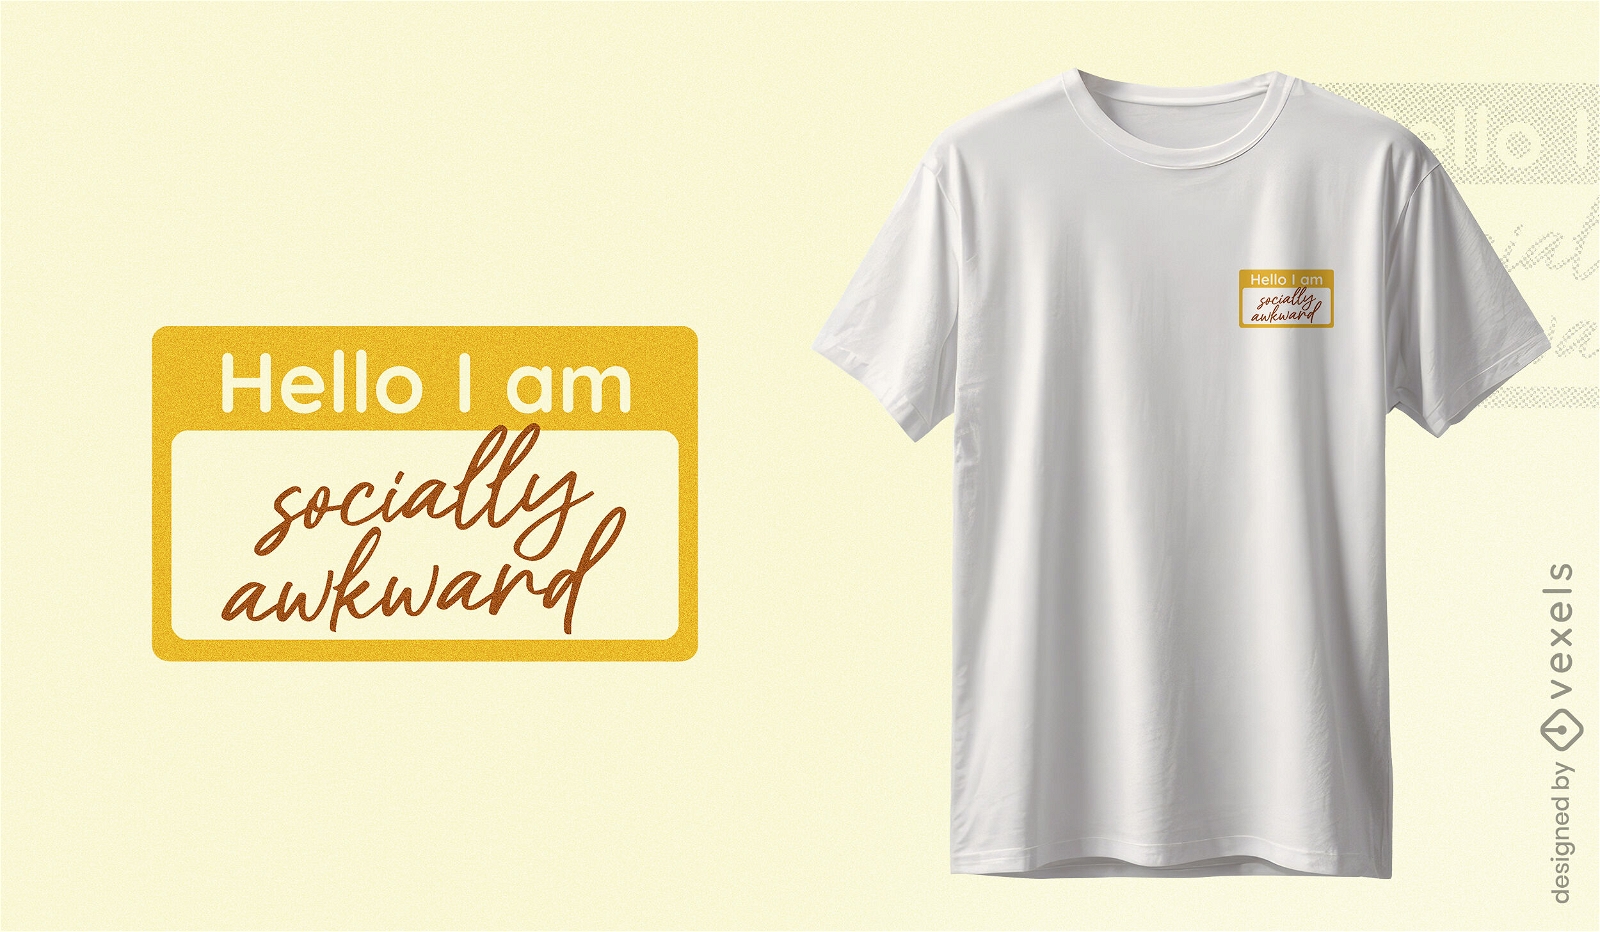 Socially awkward name tag t-shirt design